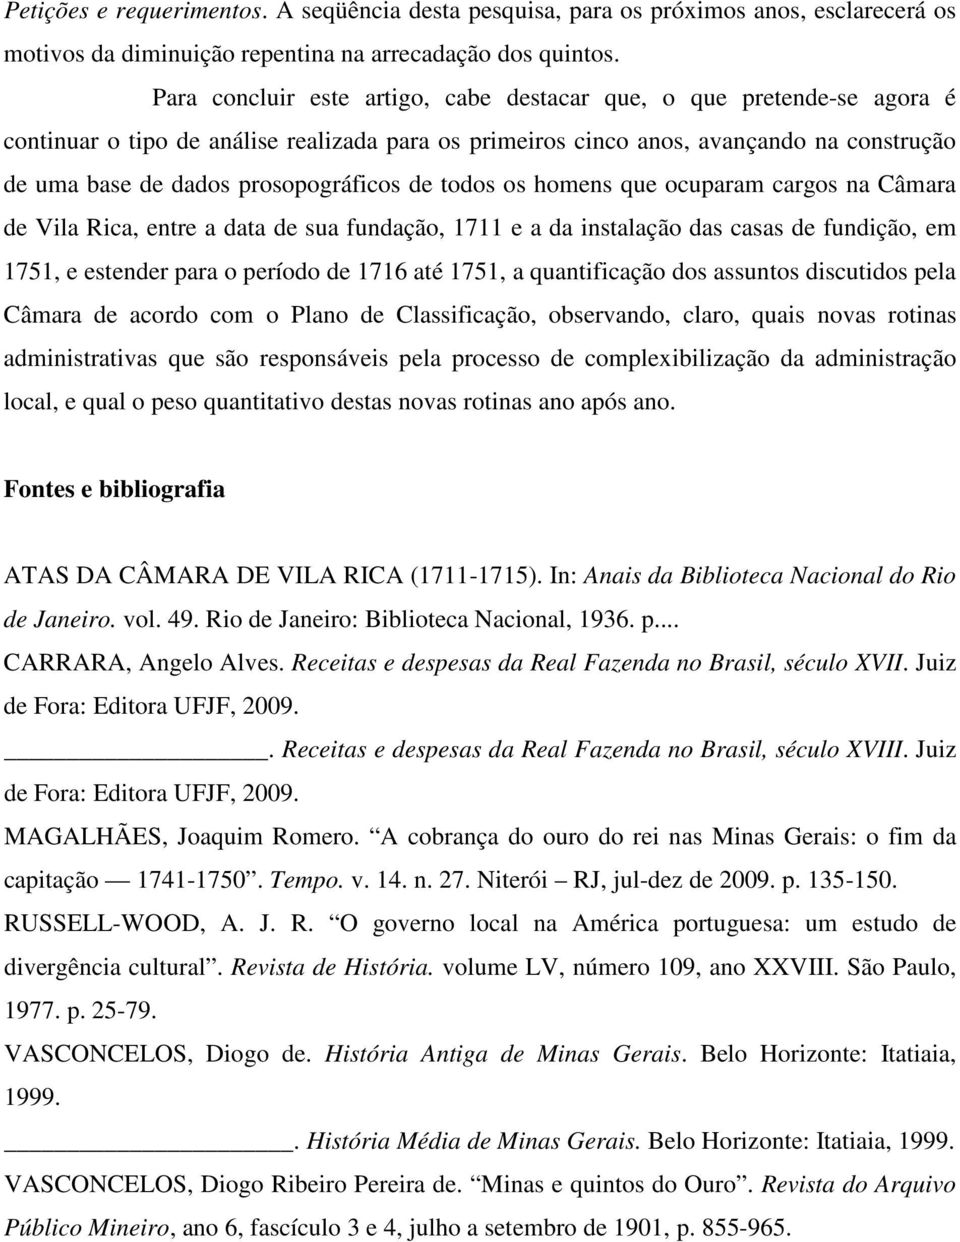 prosopográficos de todos os homens que ocuparam cargos na Câmara de Vila Rica, entre a data de sua fundação, 1711 e a da instalação das casas de fundição, em 1751, e estender para o período de 1716